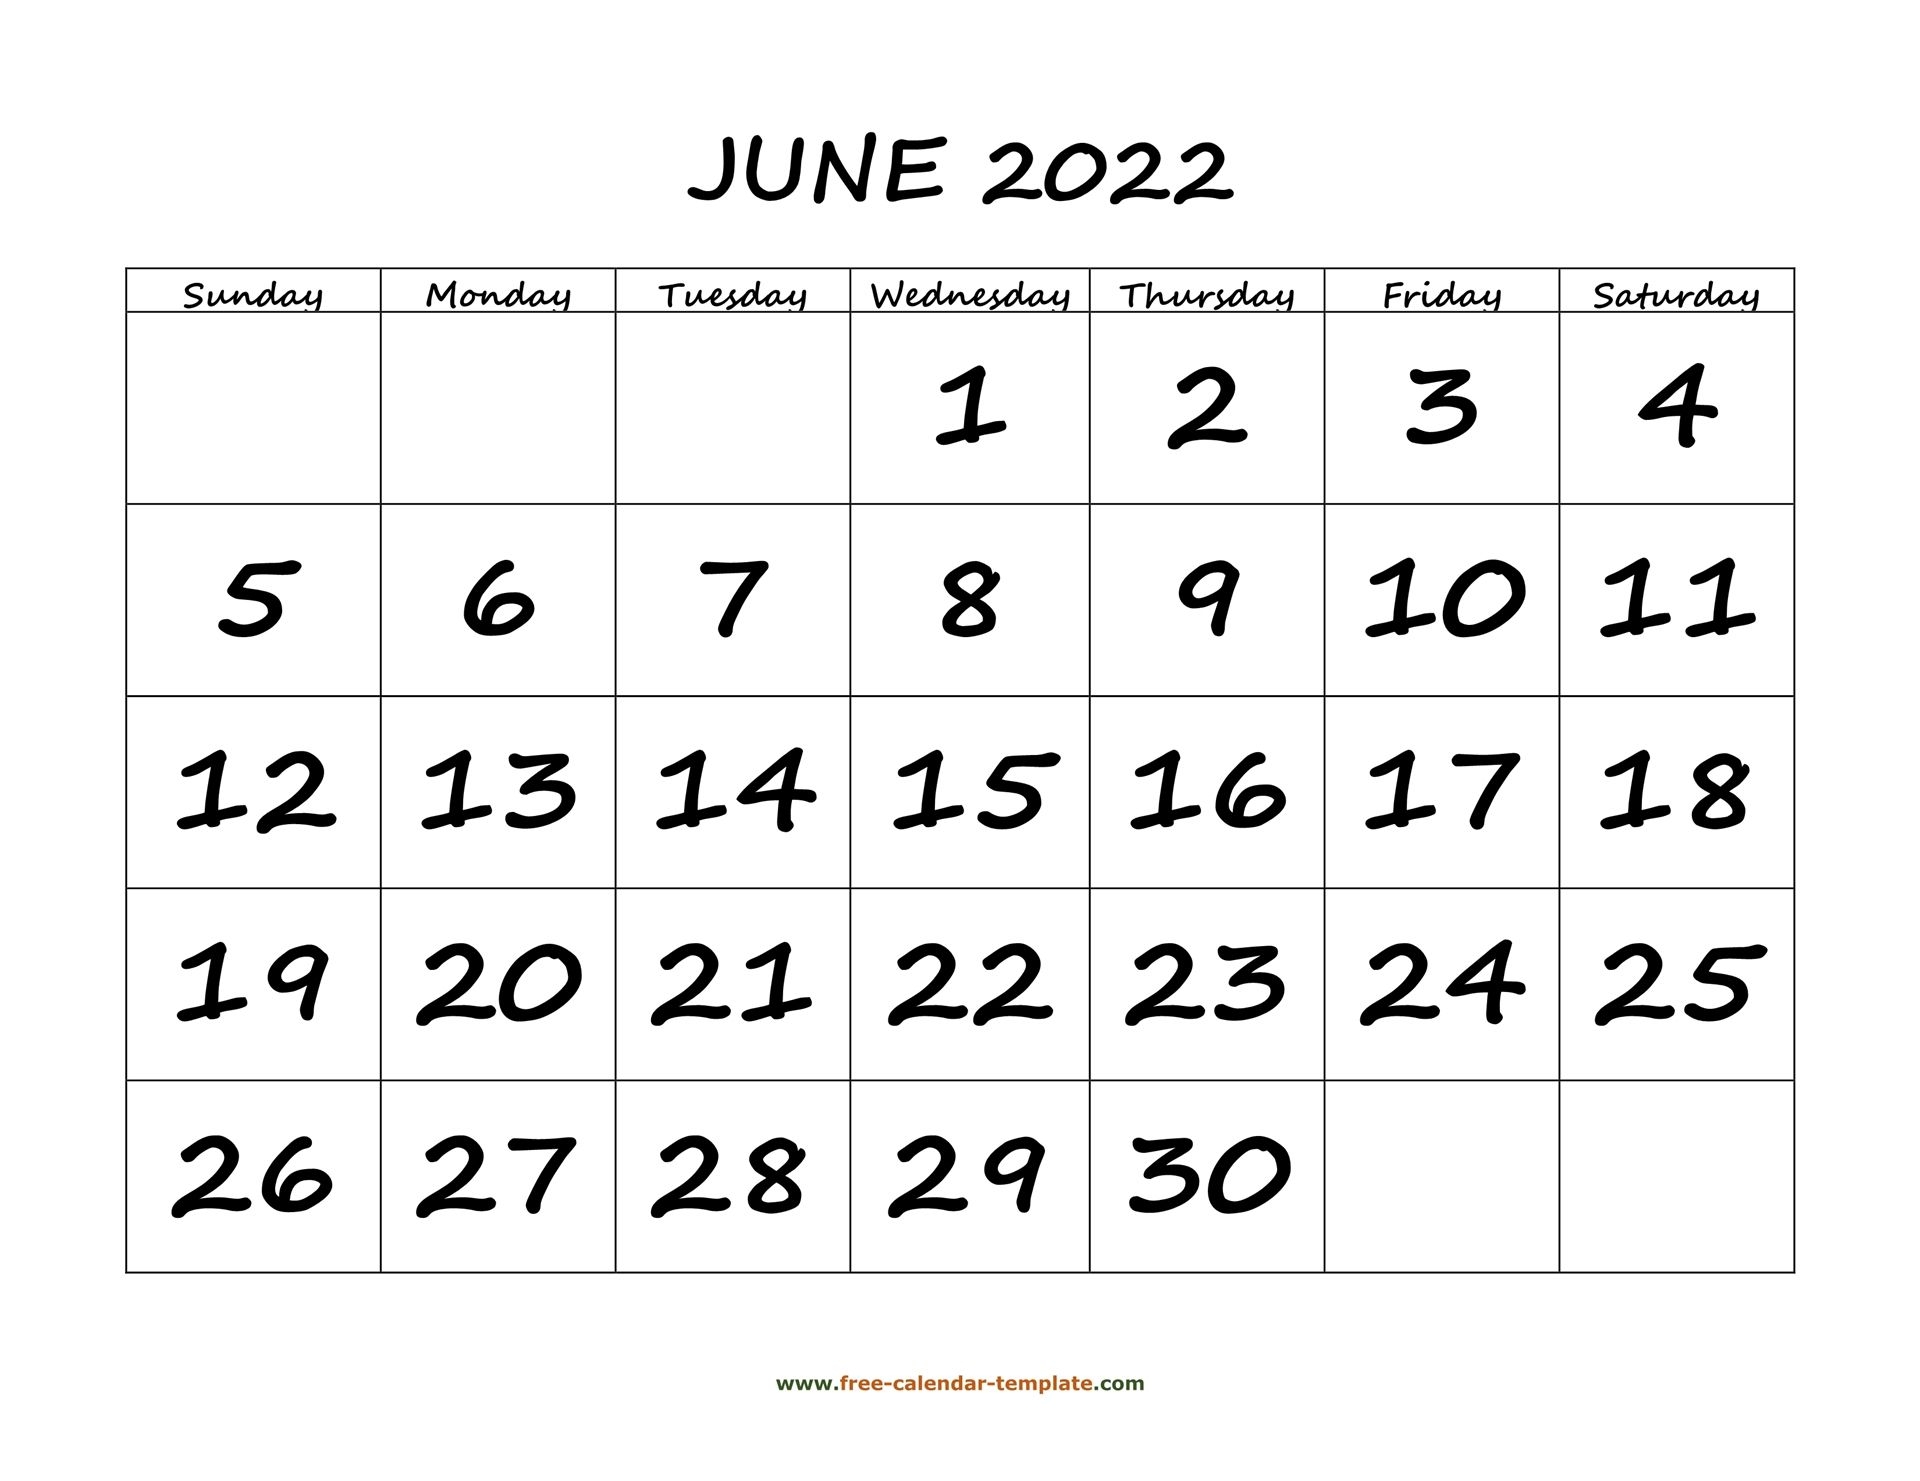 June 2022 Free Calendar Tempplate | Free-Calendar-Template